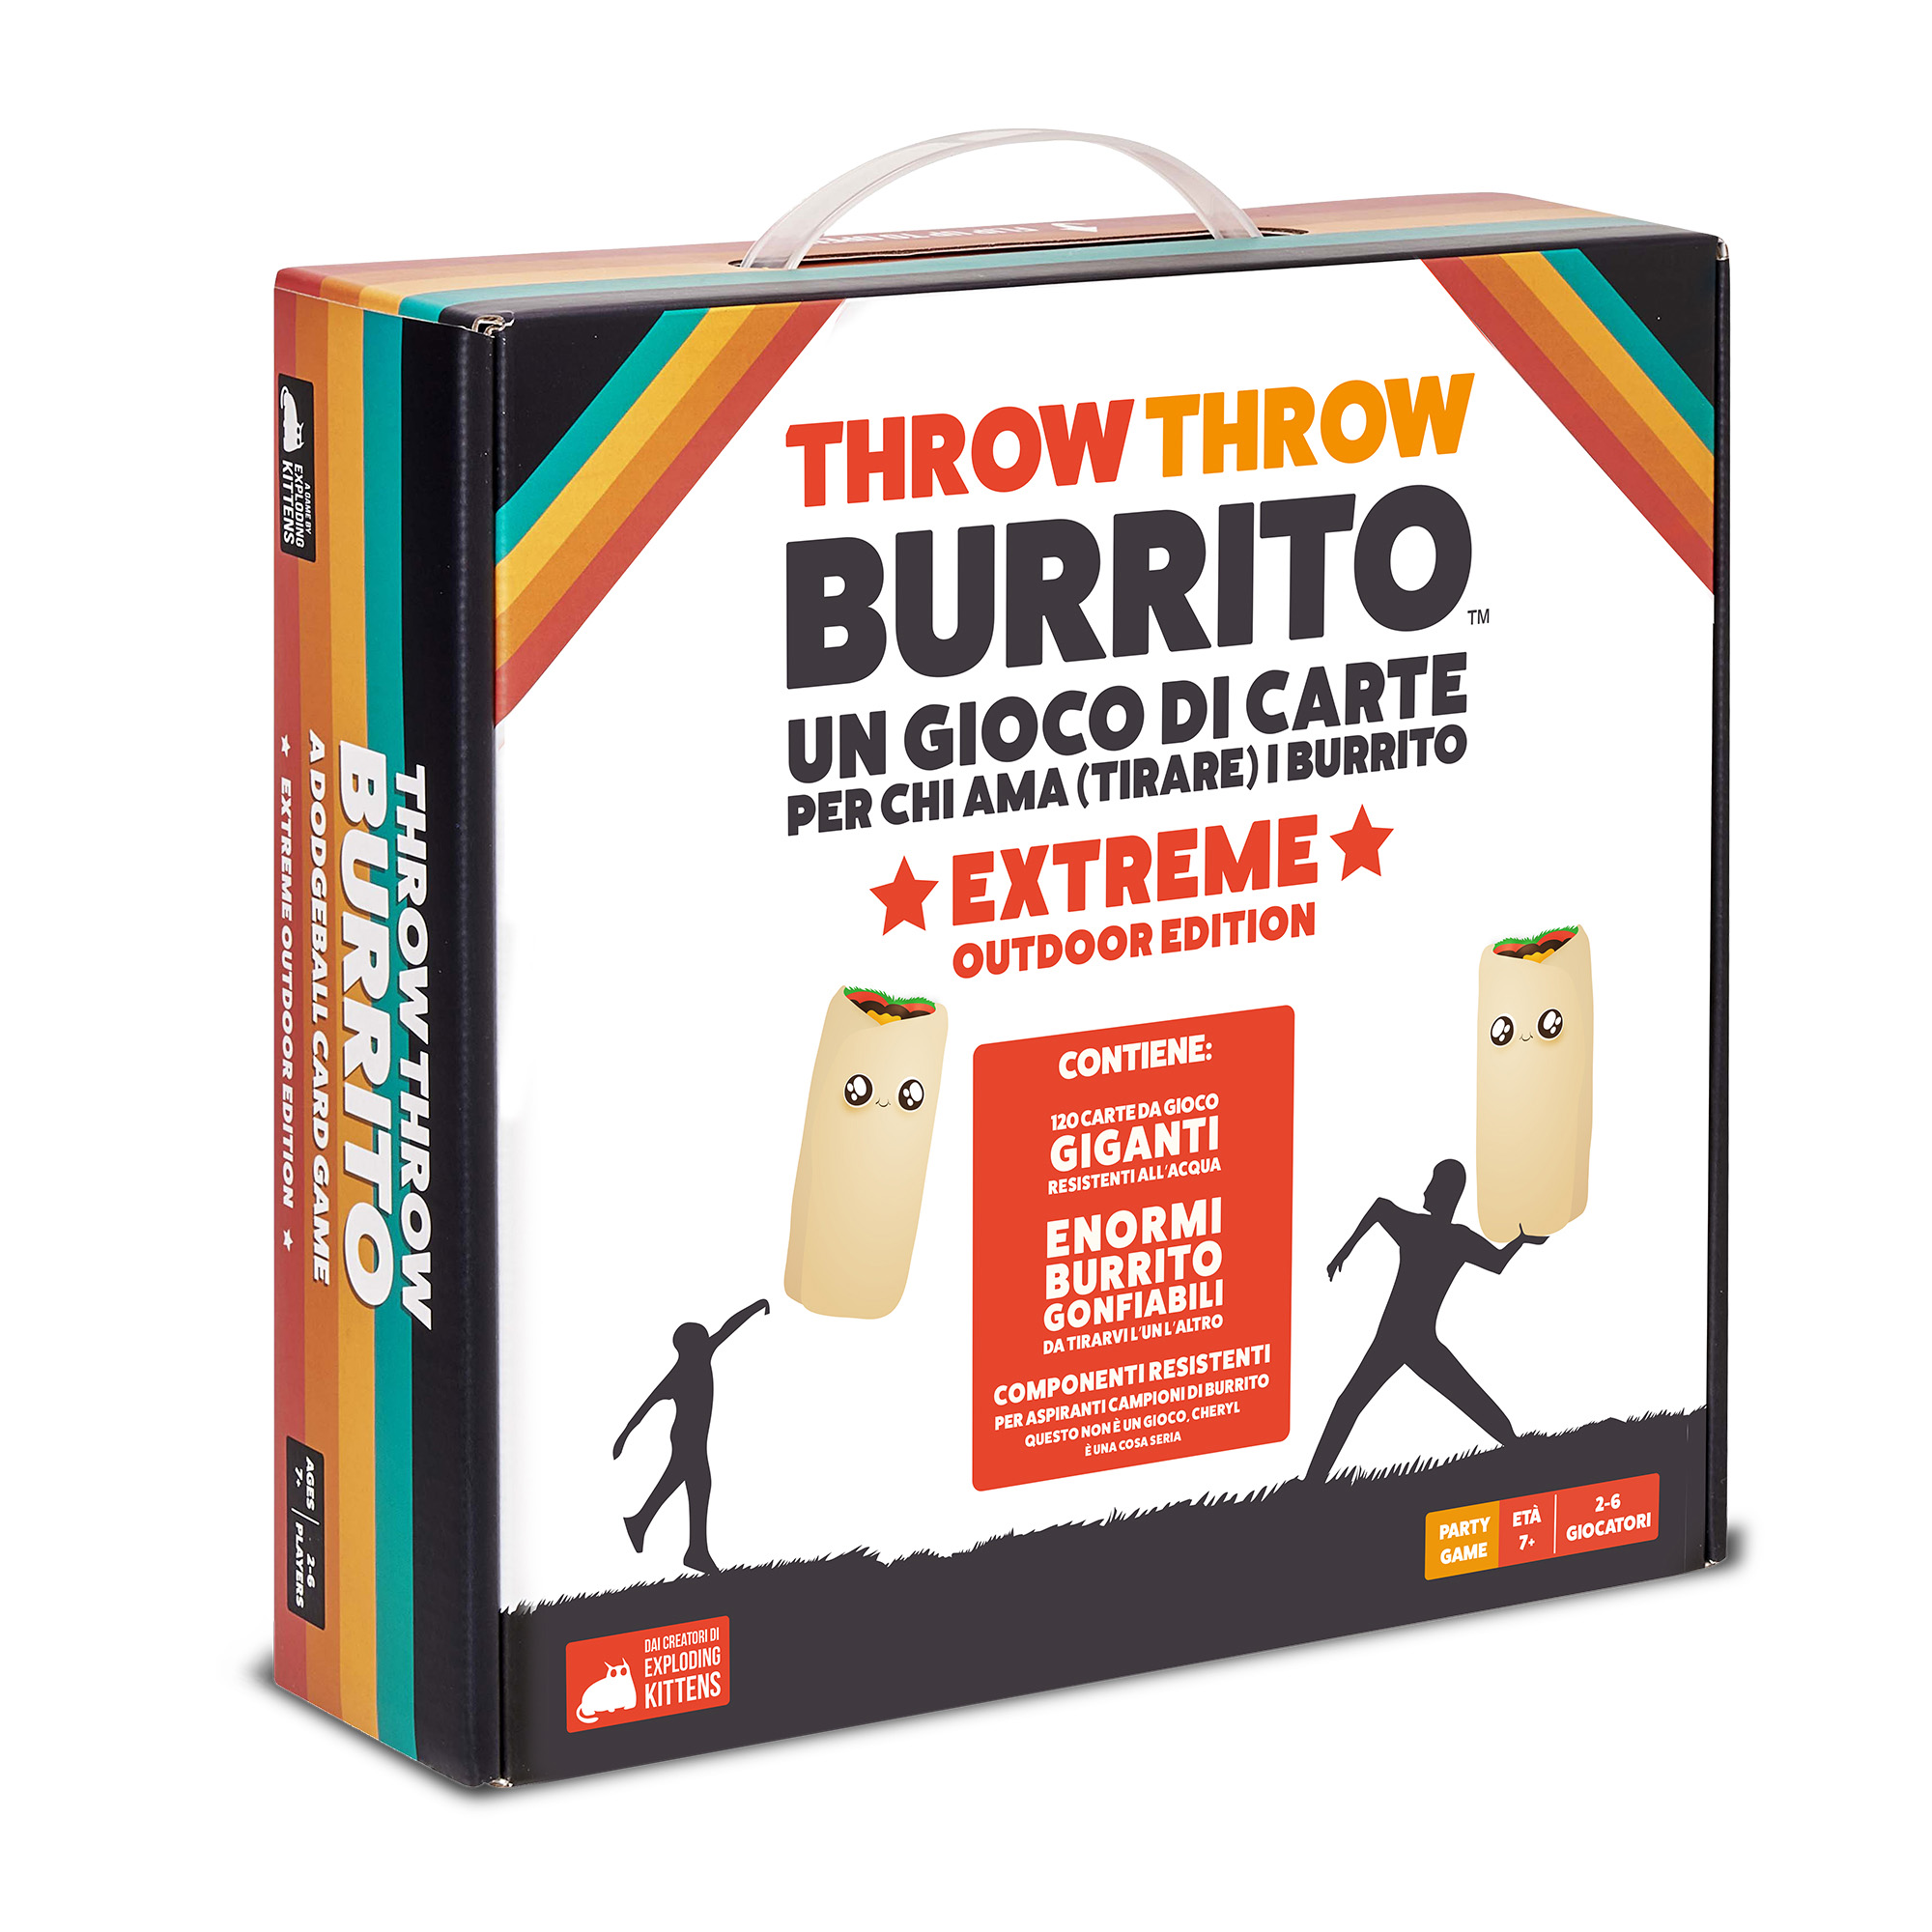 Throw Throw Burrito Extreme Outdoor Edition - Asmodee